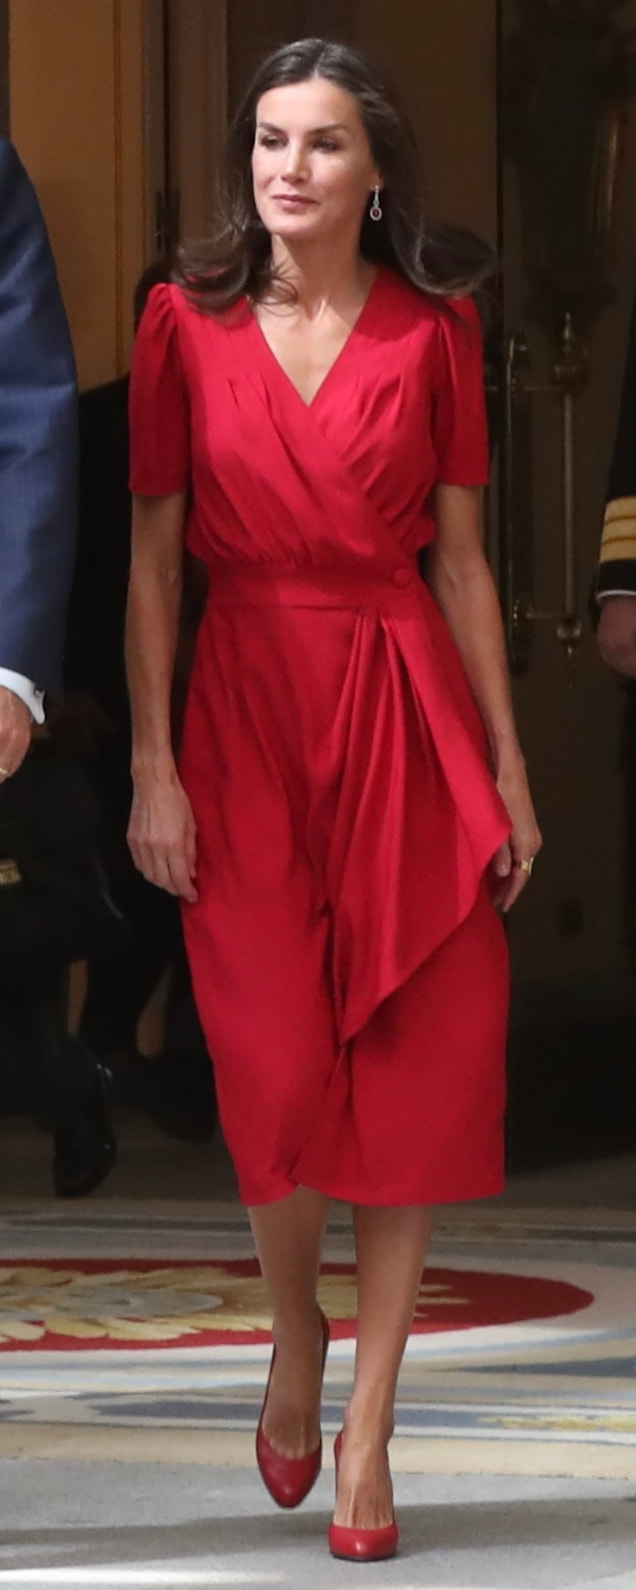 Cherubina Suzie Dress​ as seen on Queen Letizia